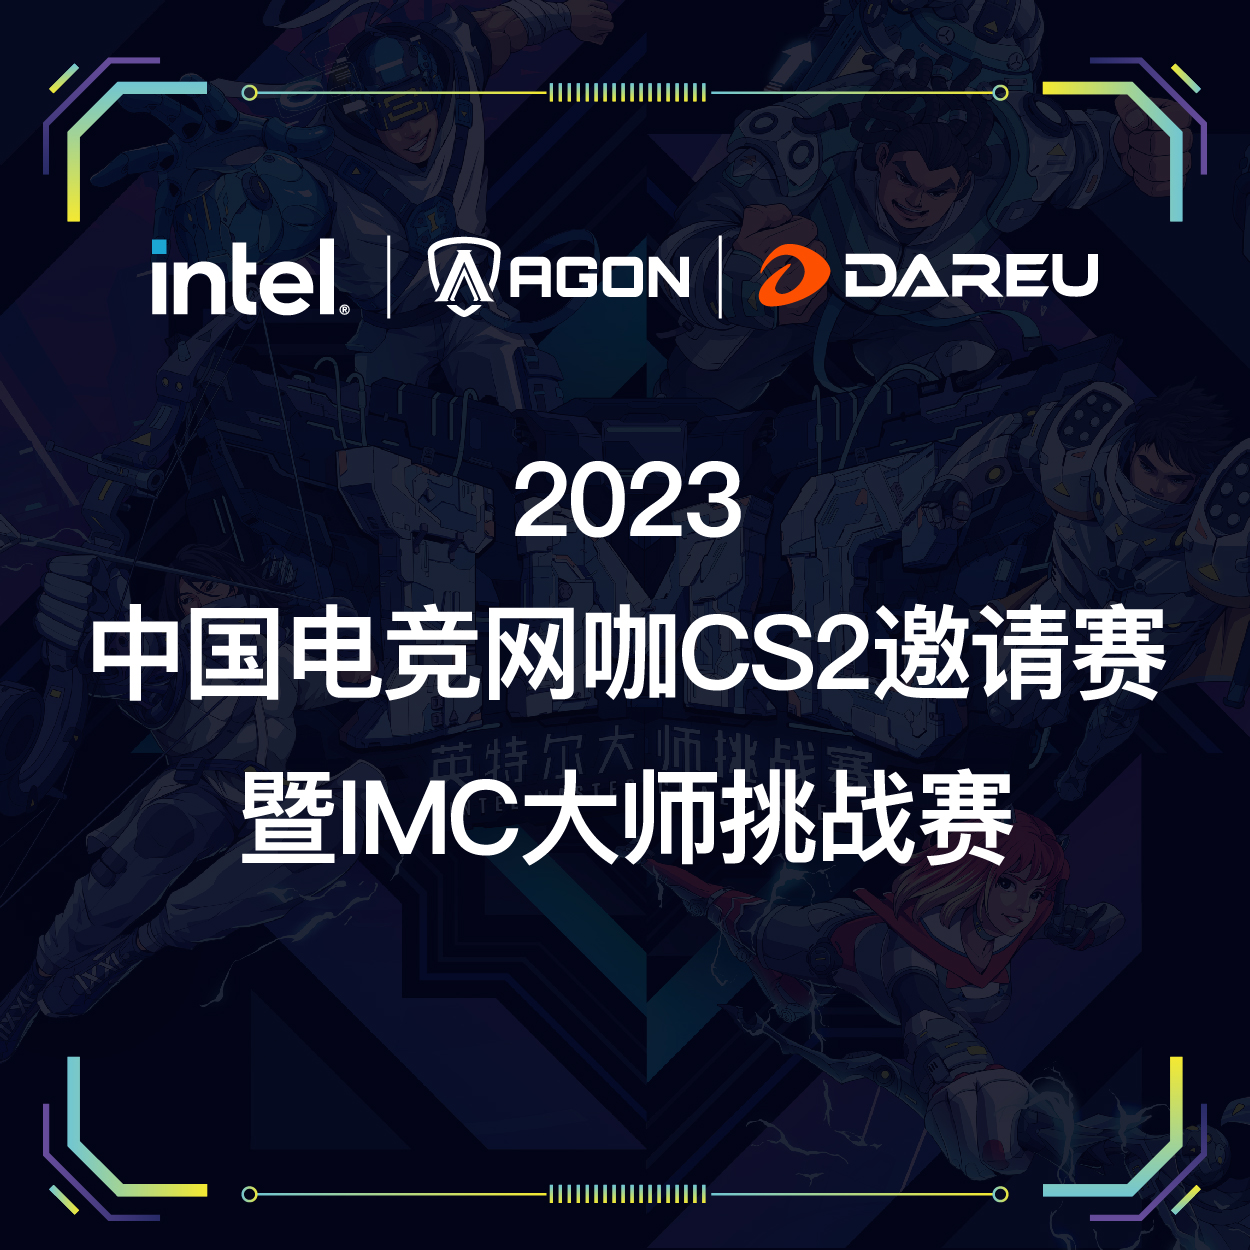 2023中国电竞网咖CS2邀请赛暨IMC-拉萨站